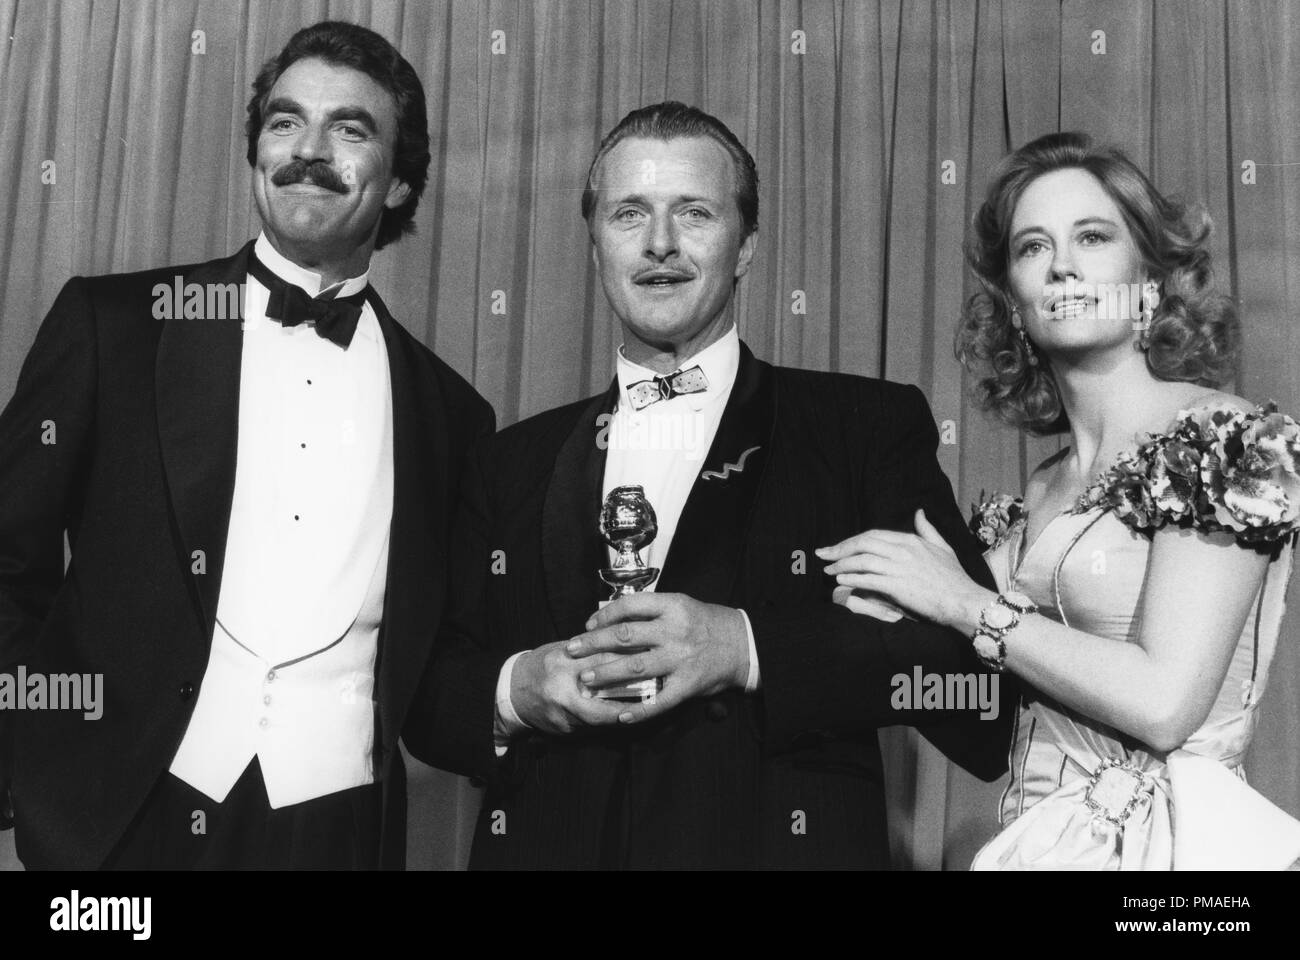 Tom Selleck, Rutger Hauer, Cybill Shepherd auf der 45. jährlichen Golden Globe Awards, 1988 Datei Referenz # 32509 917 THA Stockfoto